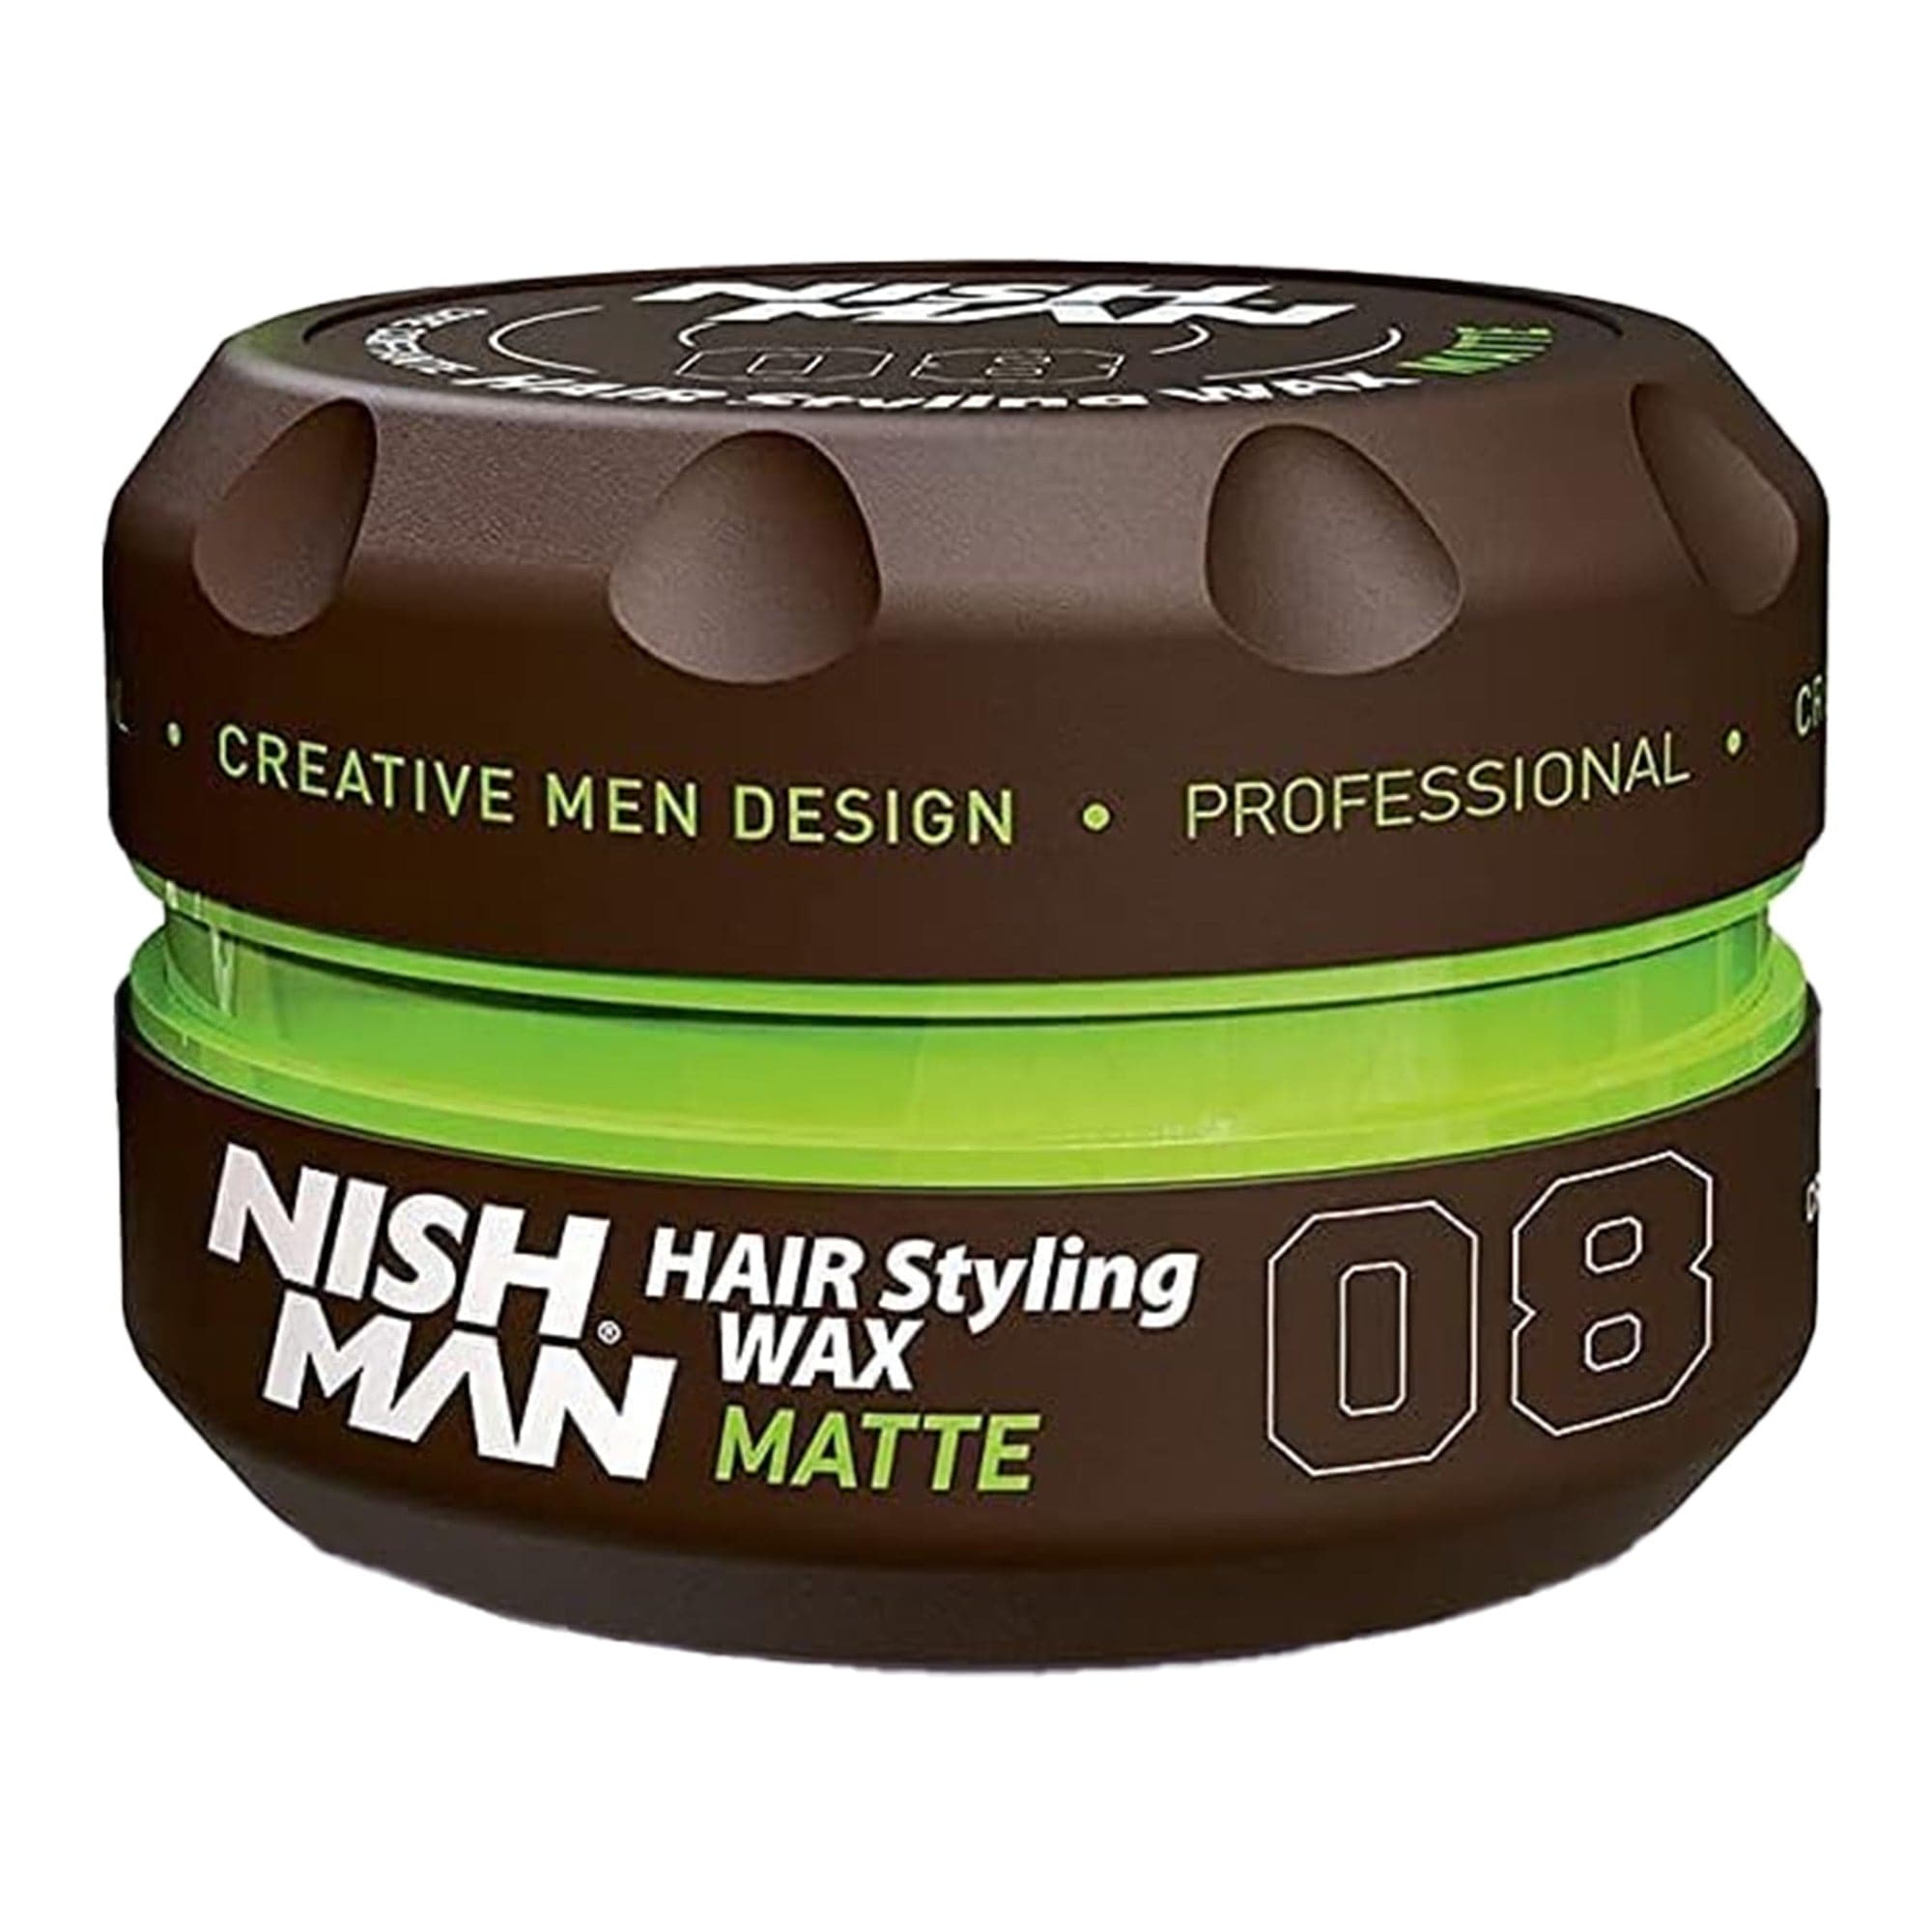 Nishman - Hair Styling Wax No.08 Matte 150ml